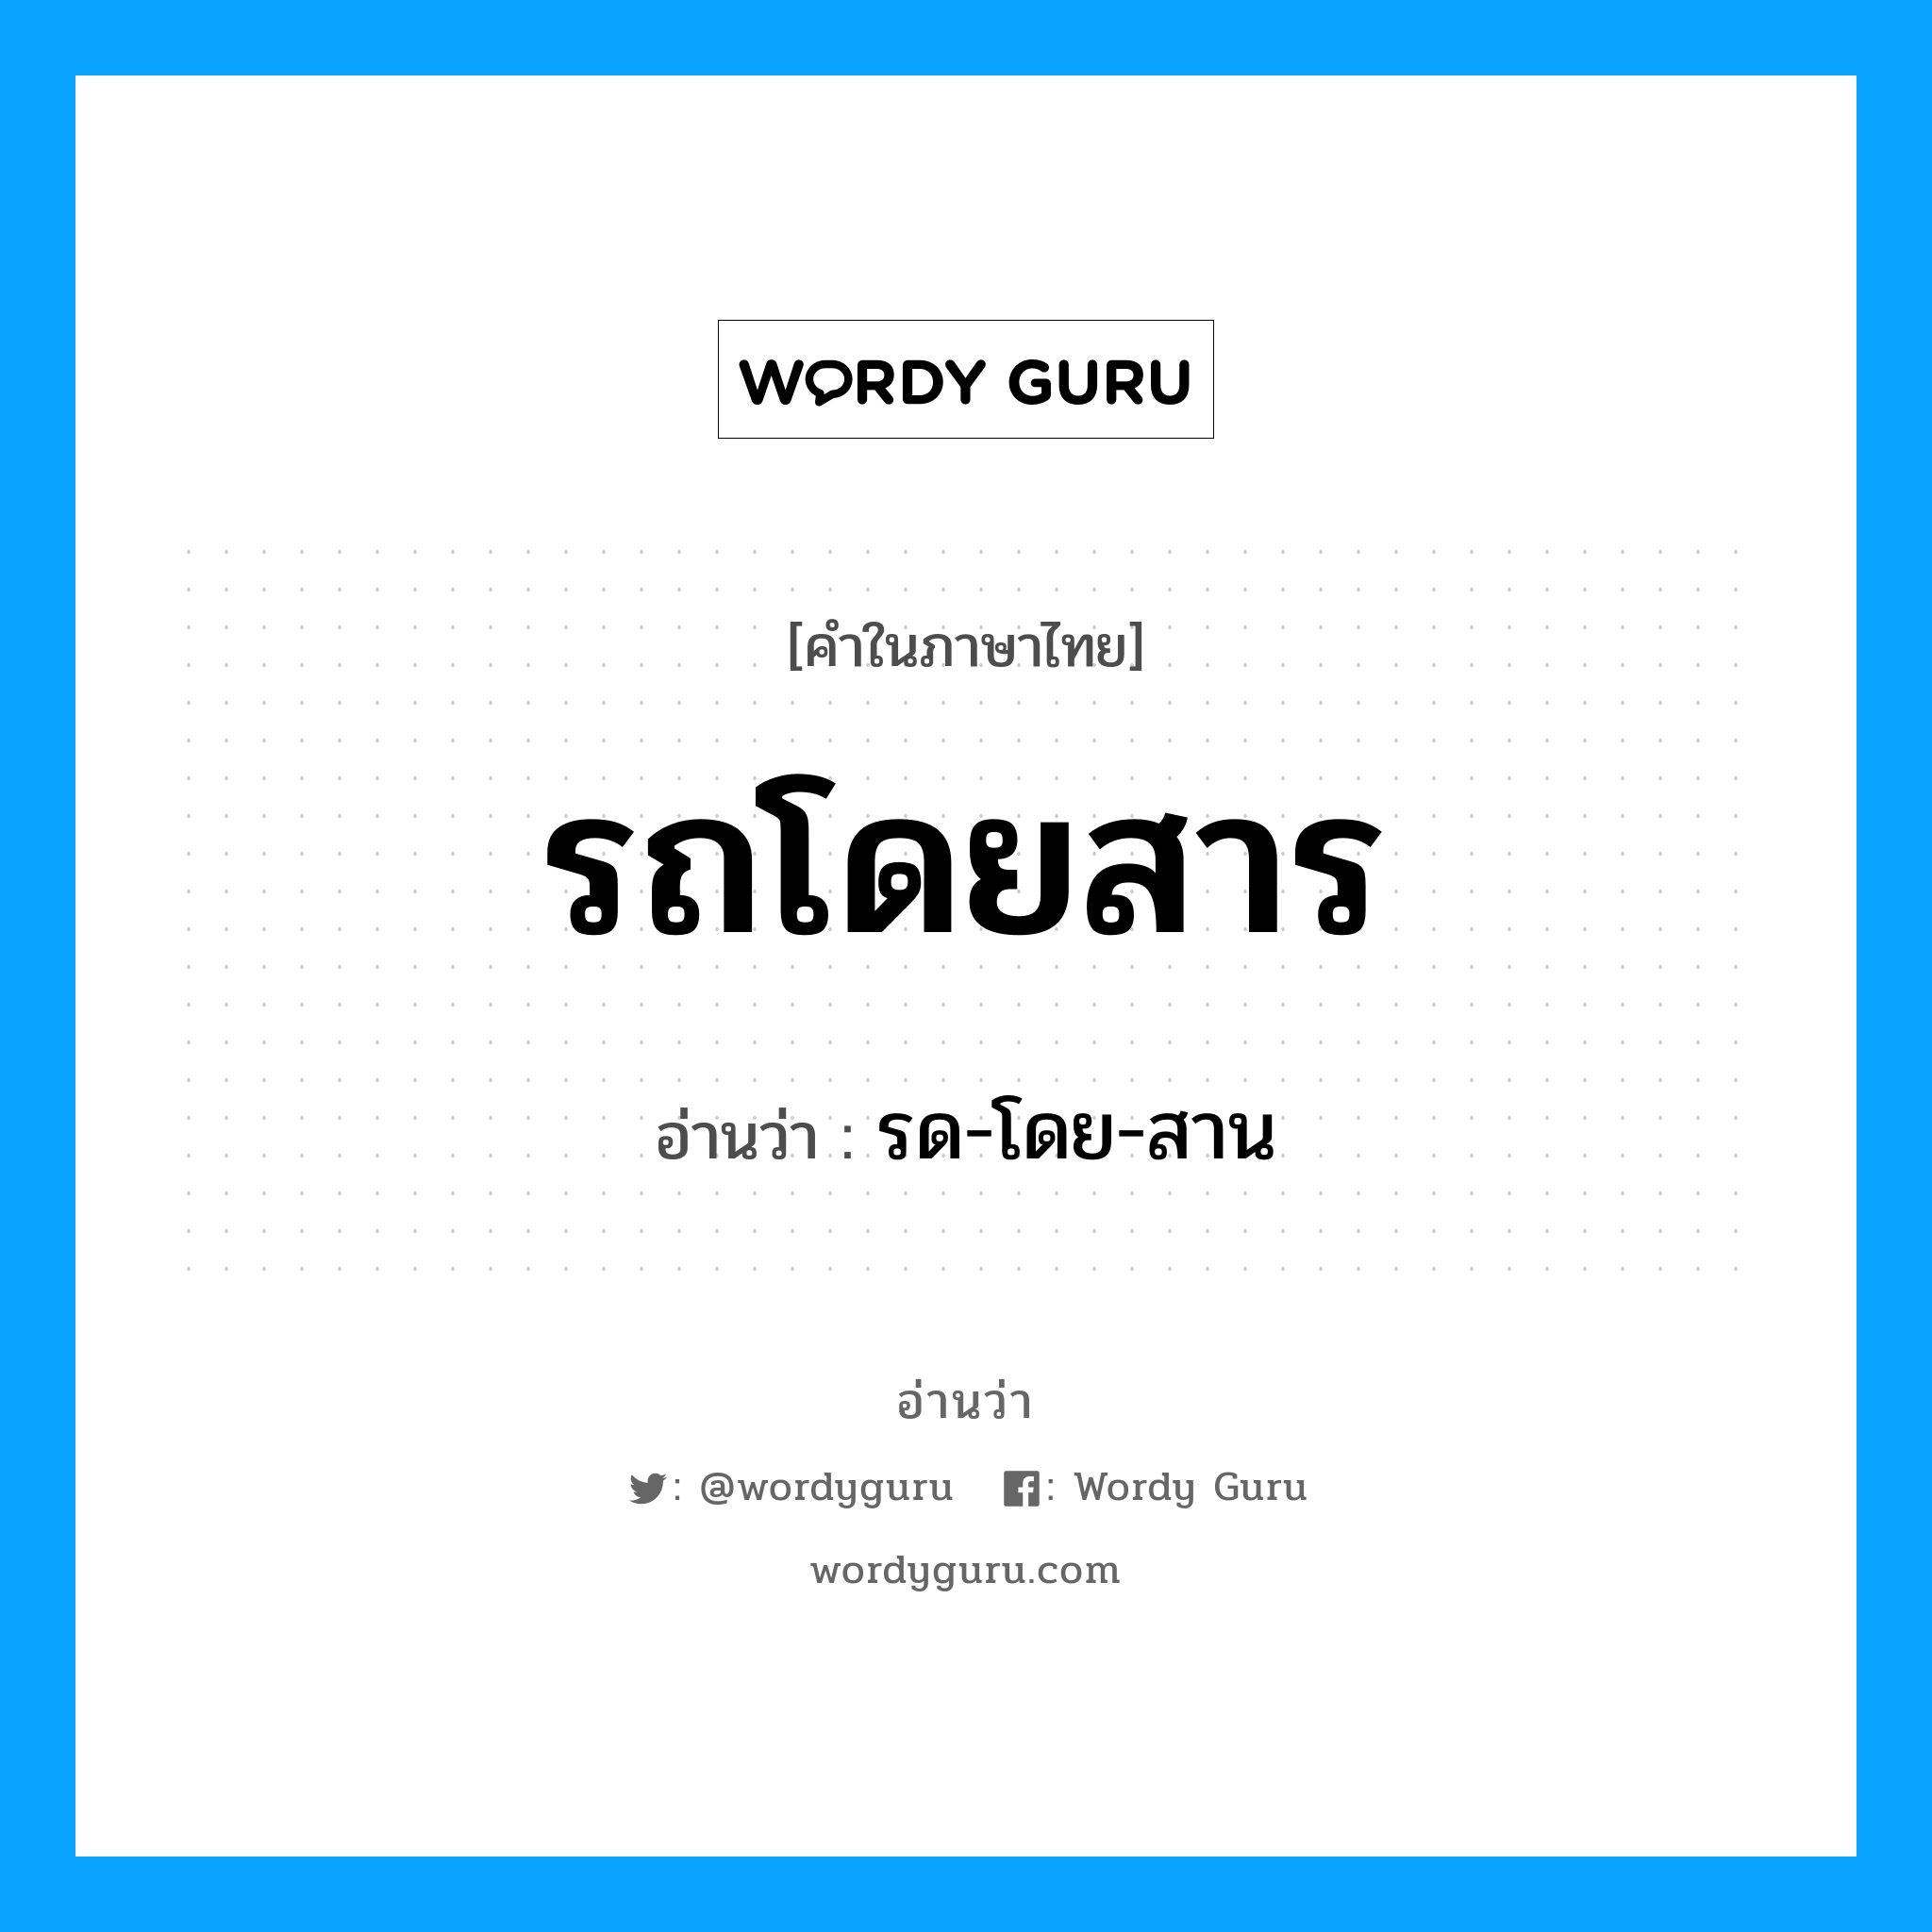 รด-โดย-สาน เป็นคำอ่านของคำไหน?, คำในภาษาไทย รด-โดย-สาน อ่านว่า รถโดยสาร